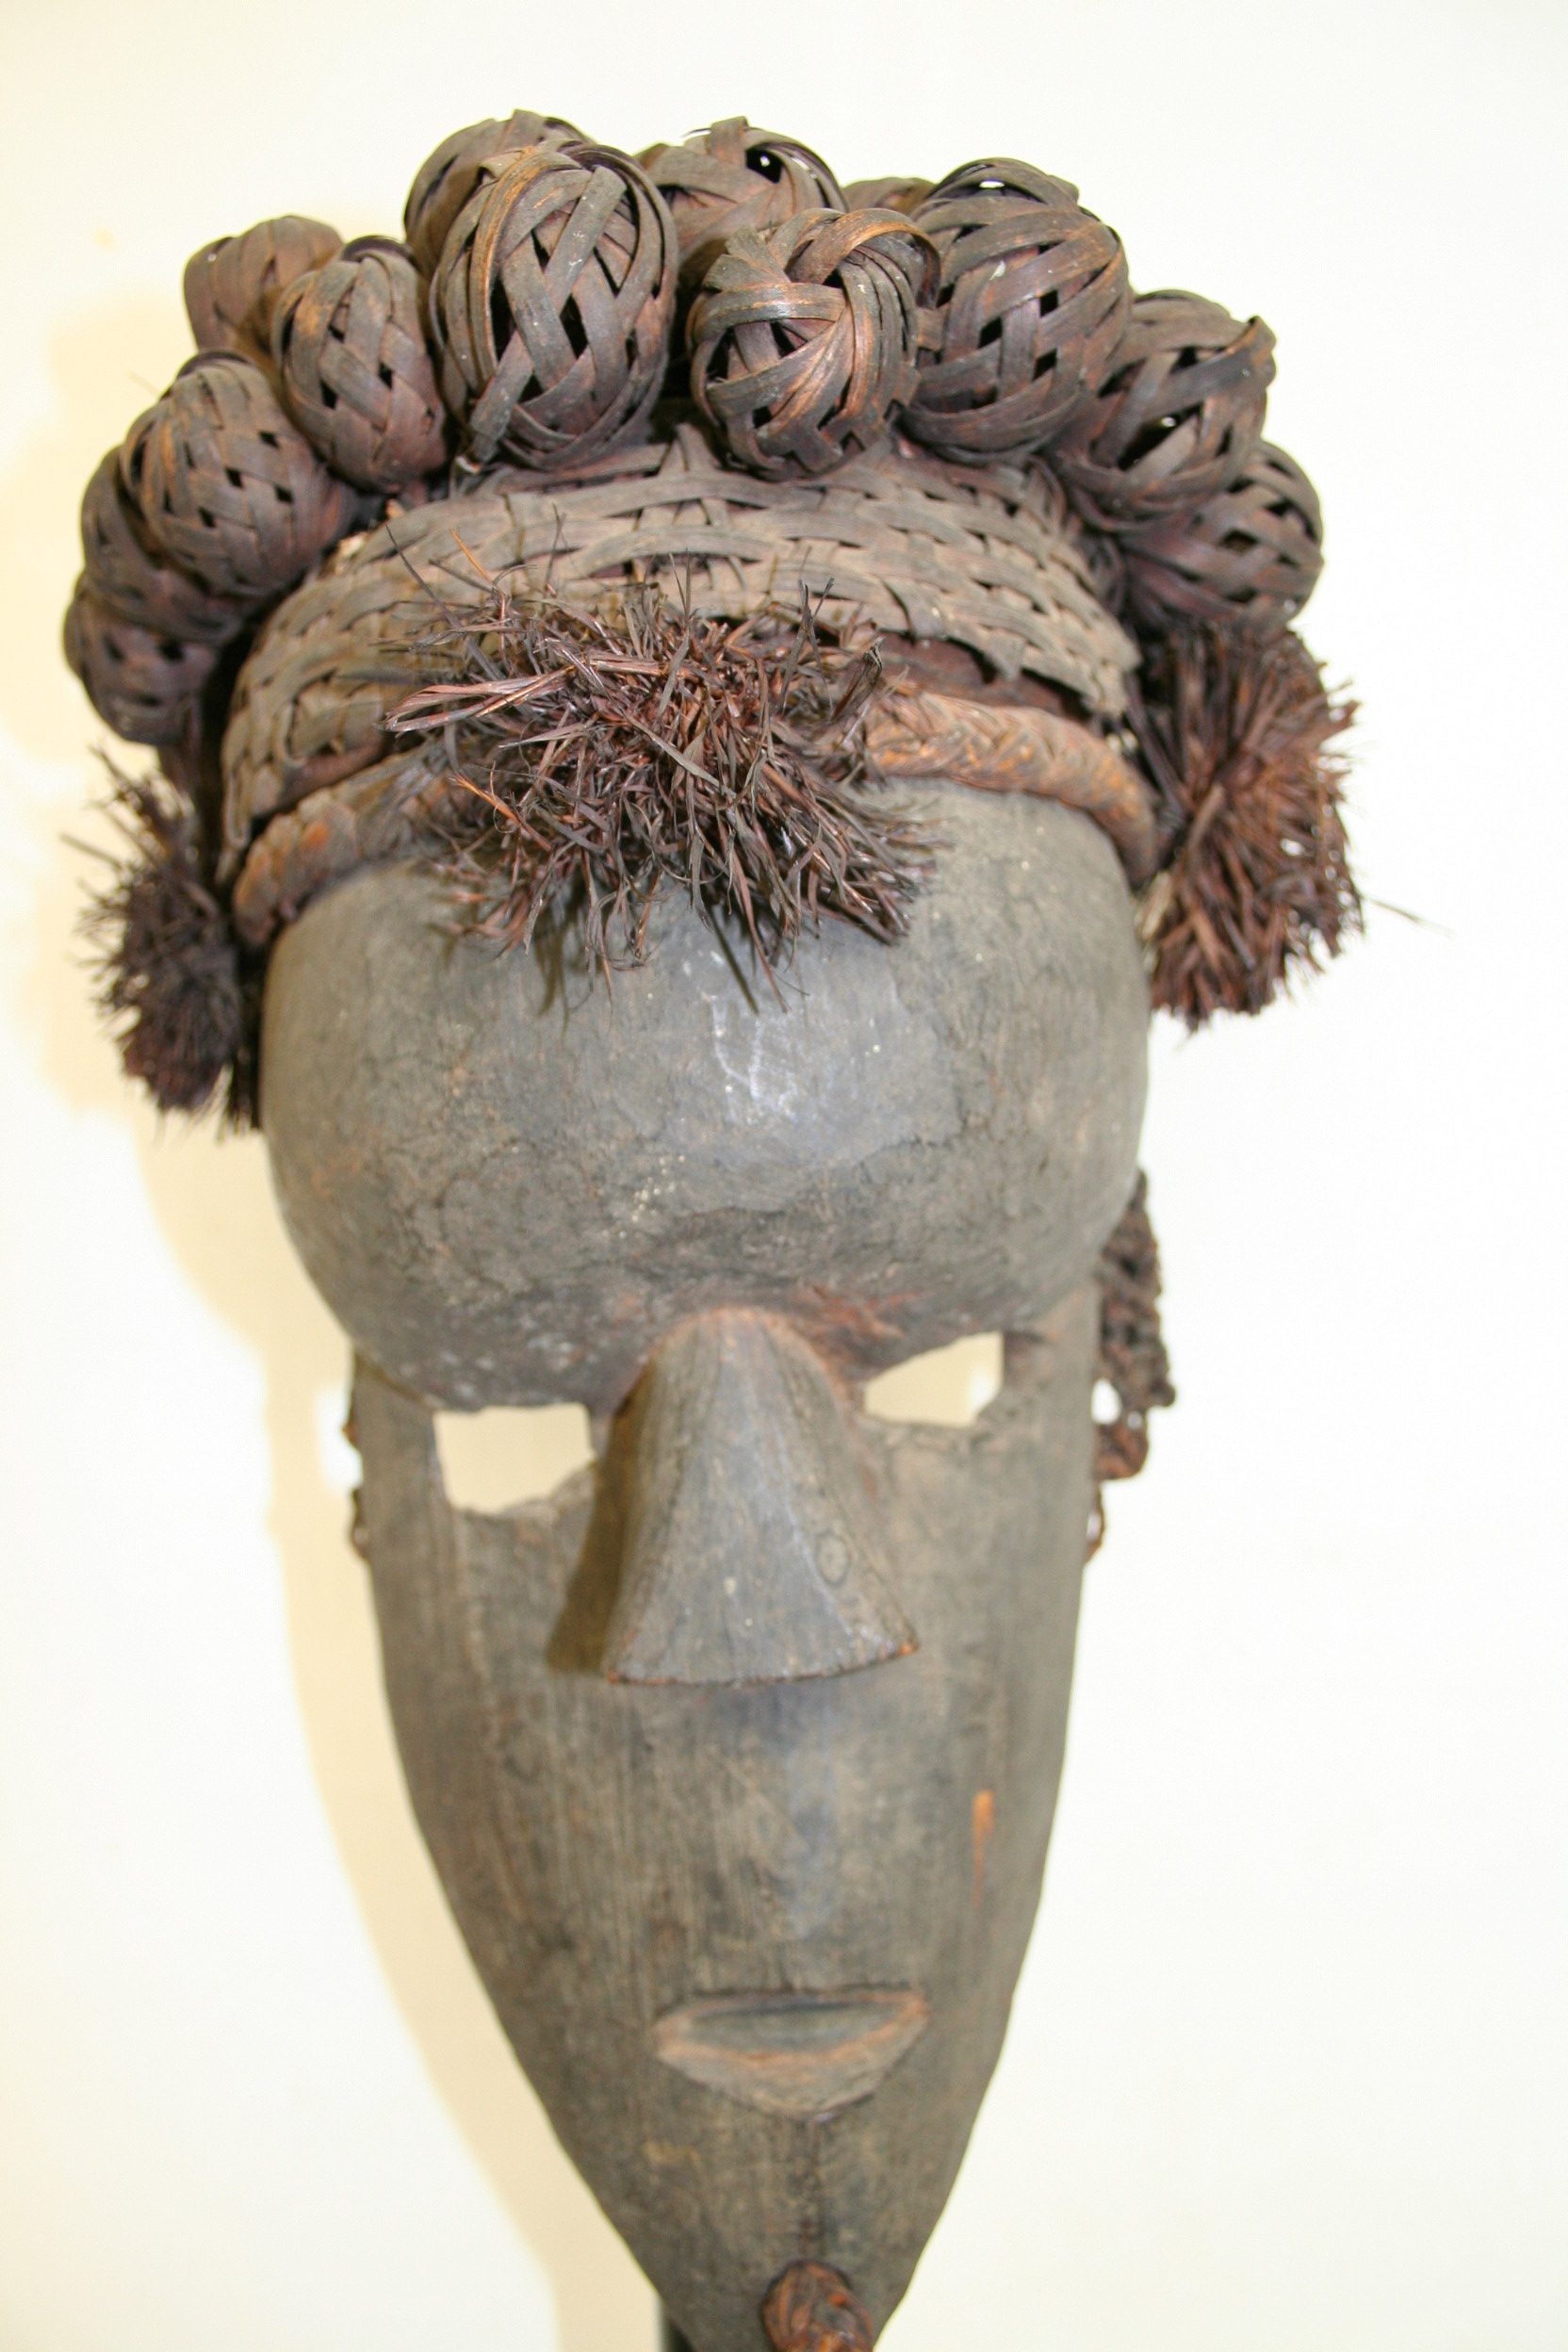 salampasu(masque), d`afrique : rép.dém.du Congo , statuette salampasu(masque), masque ancien africain salampasu(masque), art du rép.dém.du Congo  - Art Africain, collection privées Belgique. Statue africaine de la tribu des salampasu(masque), provenant du rép.dém.du Congo , 1676:Masque salampasu:bois et boules en rafia, fibres ,tissu h.27cm.
1ere moitié du 20eme sc.(pères blancs à Lille)

Salapasu masker:hout ,bollen van rafia en vezels,stoffen 1ste helft 20ste eeuw
(witte paters Rijsel)


. art,culture,masque,statue,statuette,pot,ivoire,exposition,expo,masque original,masques,statues,statuettes,pots,expositions,expo,masques originaux,collectionneur d`art,art africain,culture africaine,masque africain,statue africaine,statuette africaine,pot africain,ivoire africain,exposition africain,expo africain,masque origina africainl,masques africains,statues africaines,statuettes africaines,pots africains,expositions africaines,expo africaines,masques originaux  africains,collectionneur d`art africain